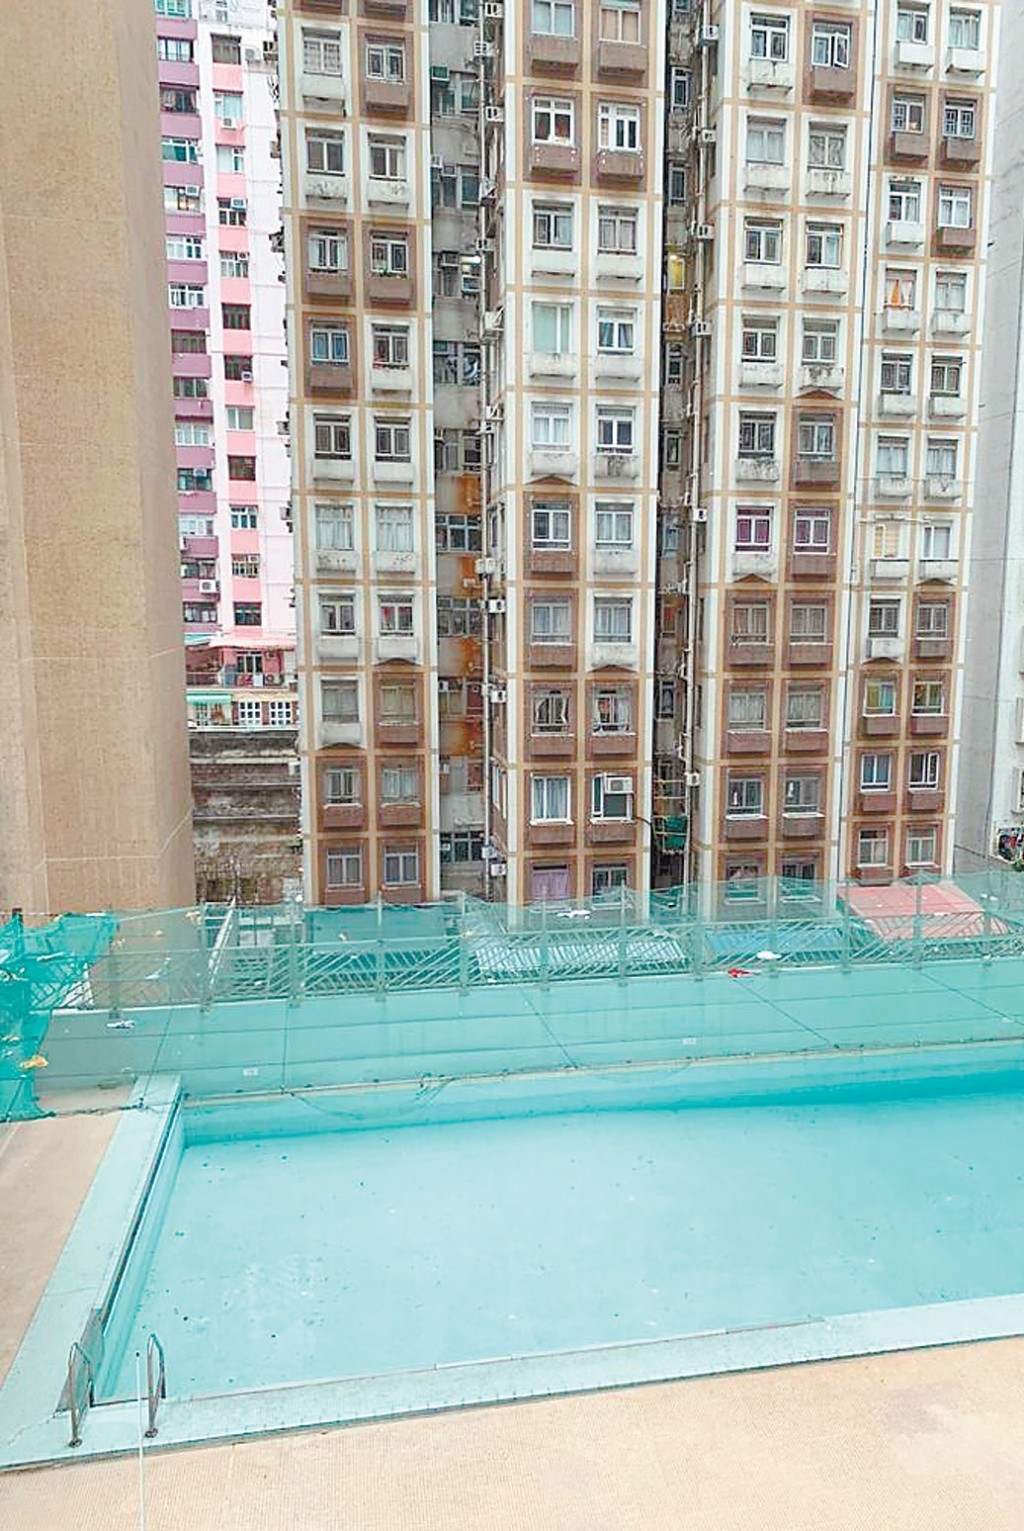 窗外可望屋苑泳池及同区楼景。